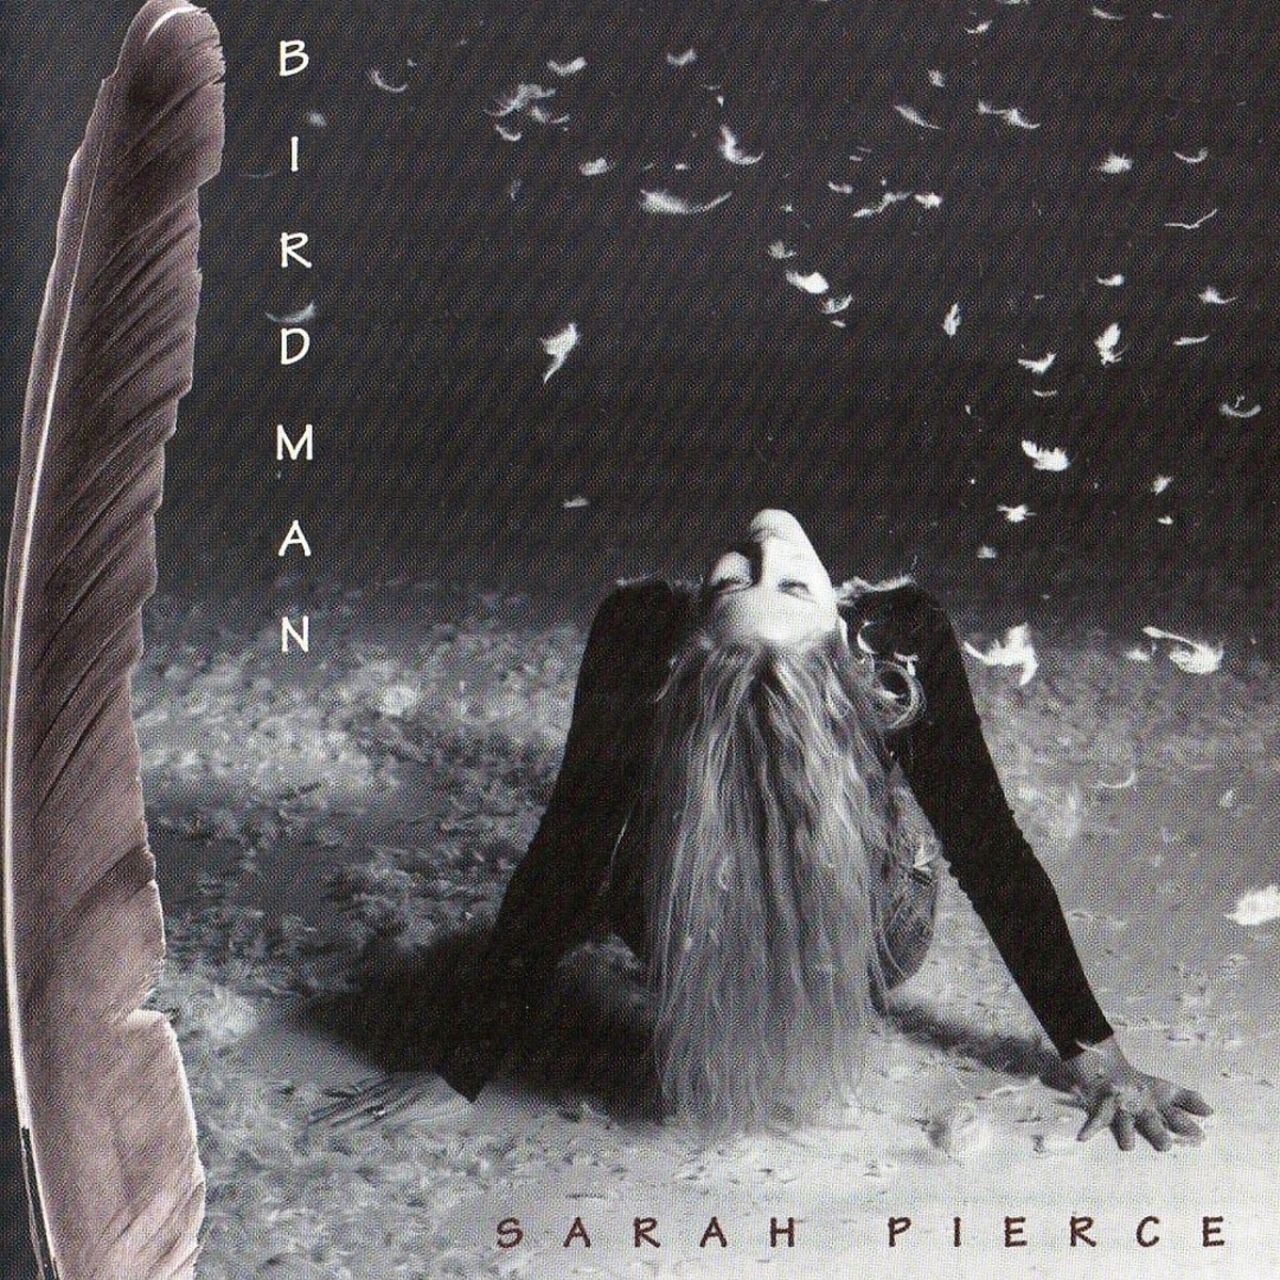 Sarah Pierce - Birdman cover album